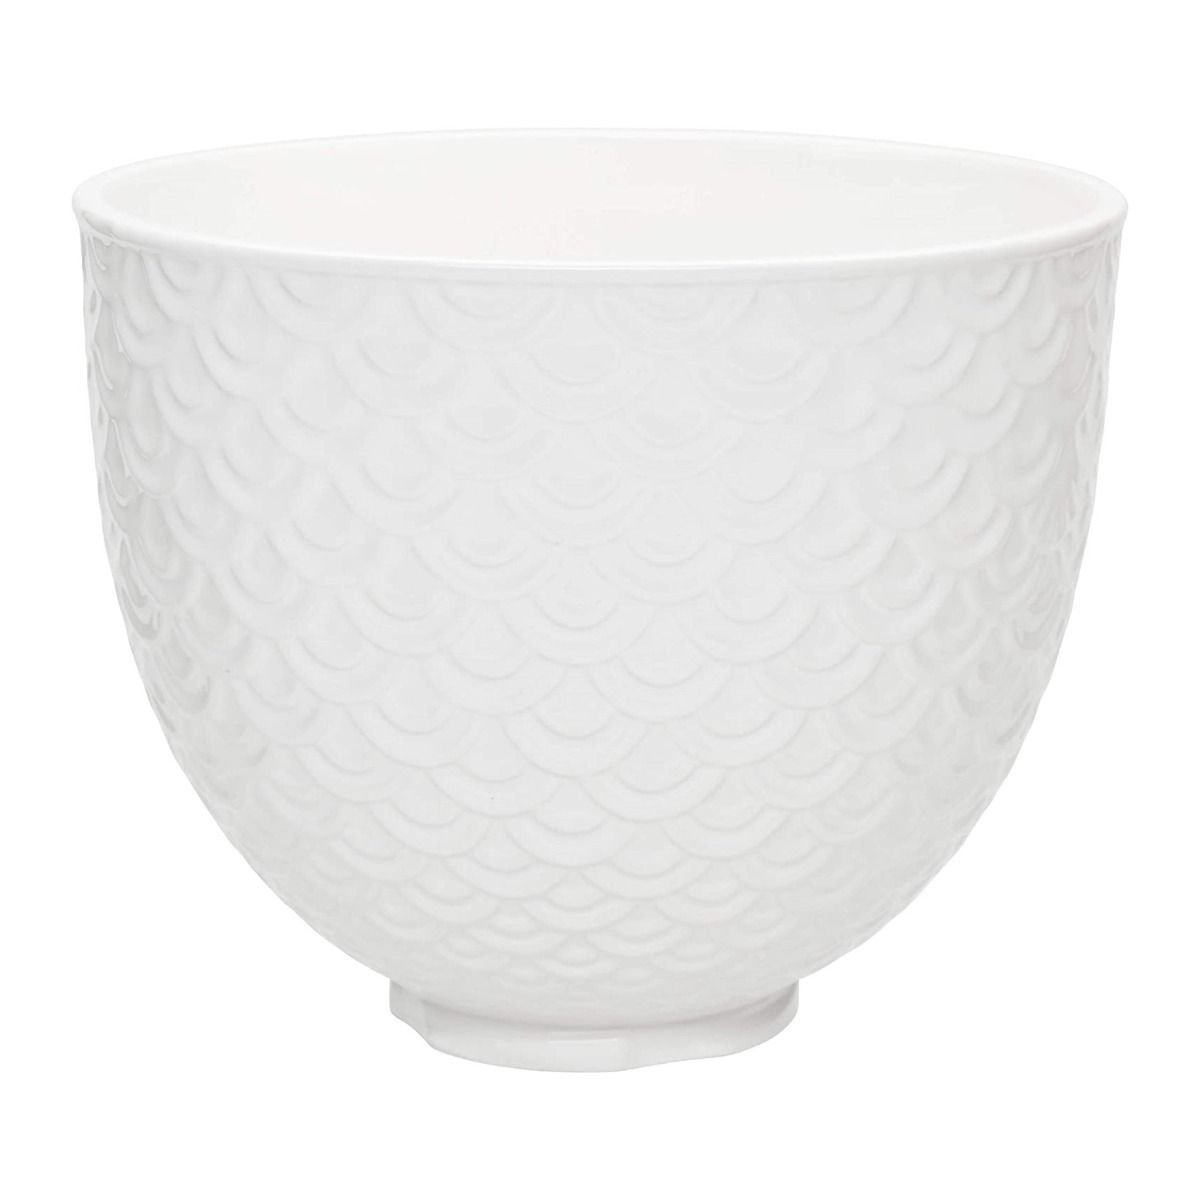  KitchenAid 5 Quart Ceramic Bowl for all KitchenAid 4.5